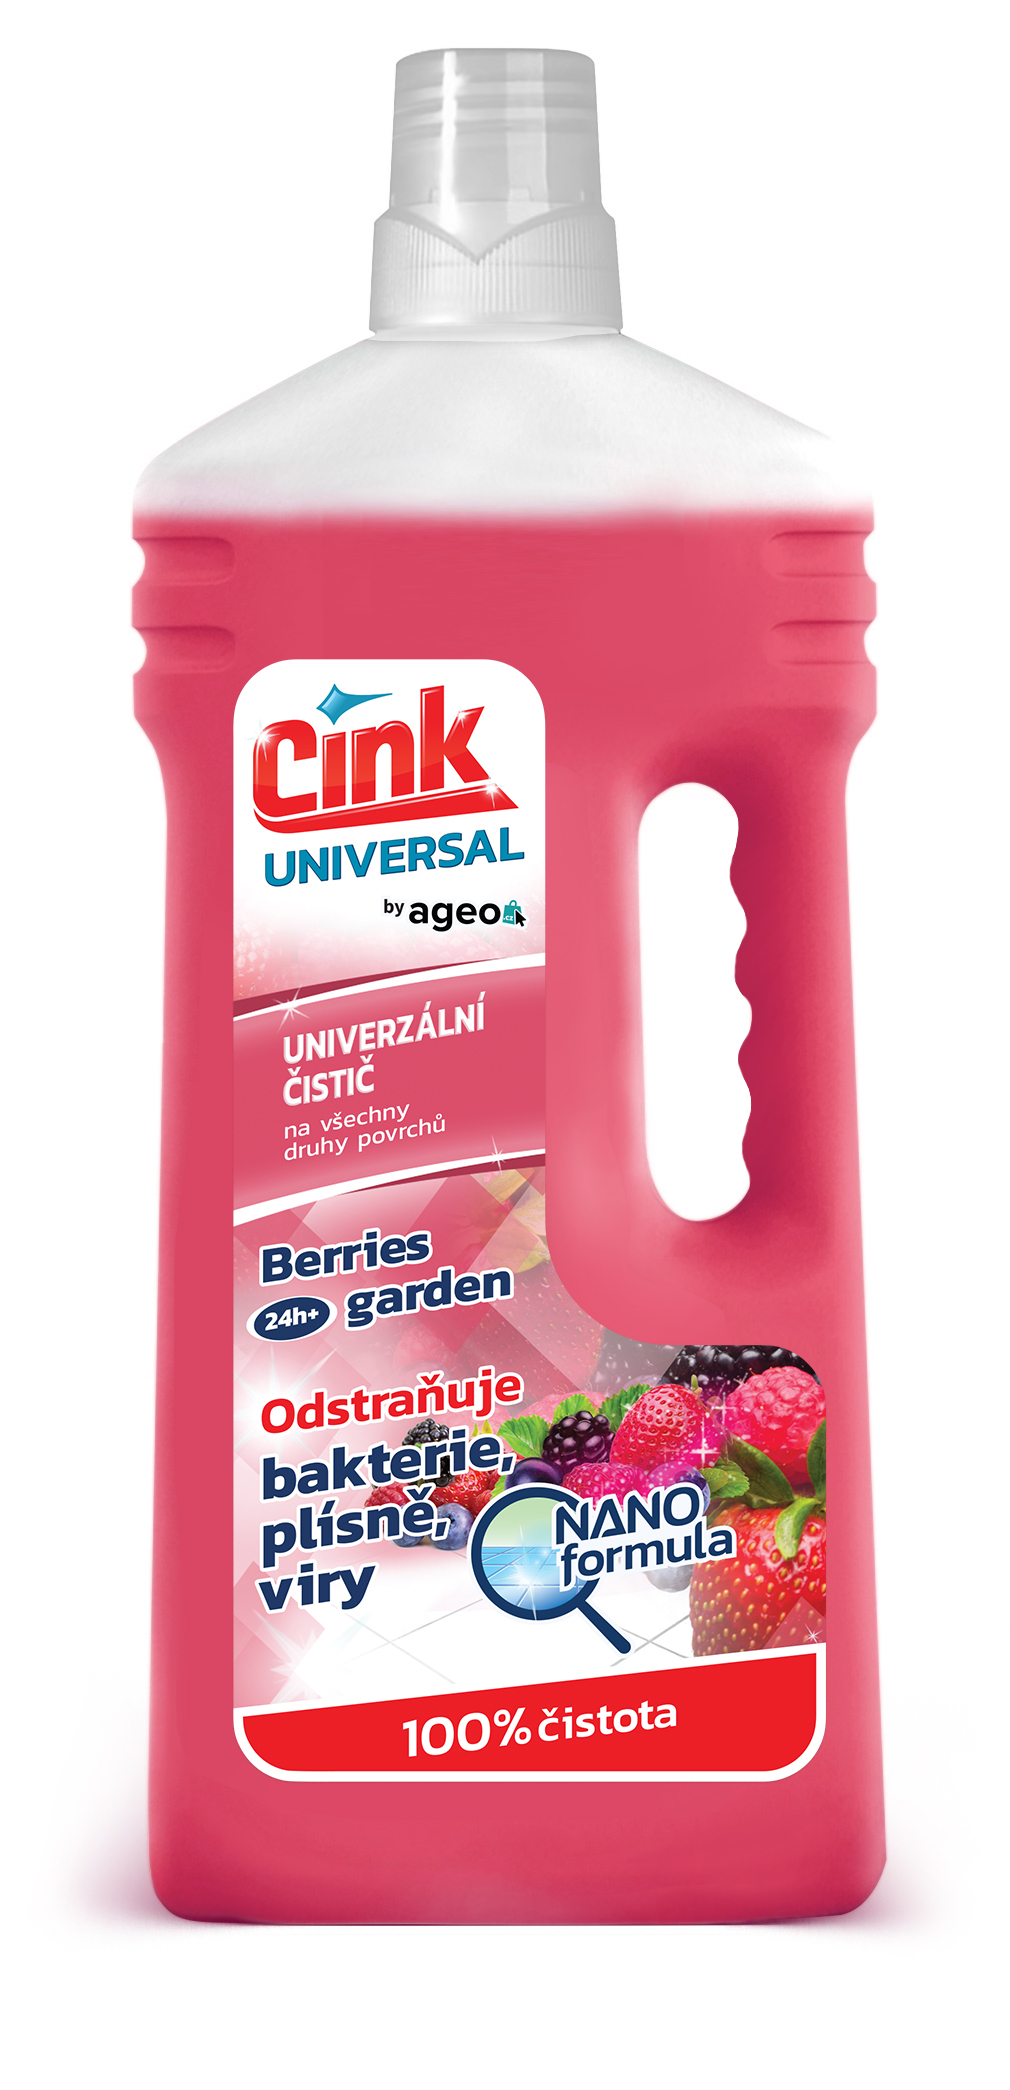 Cink Universal univerzální čistič na všechny povrchy 1 l